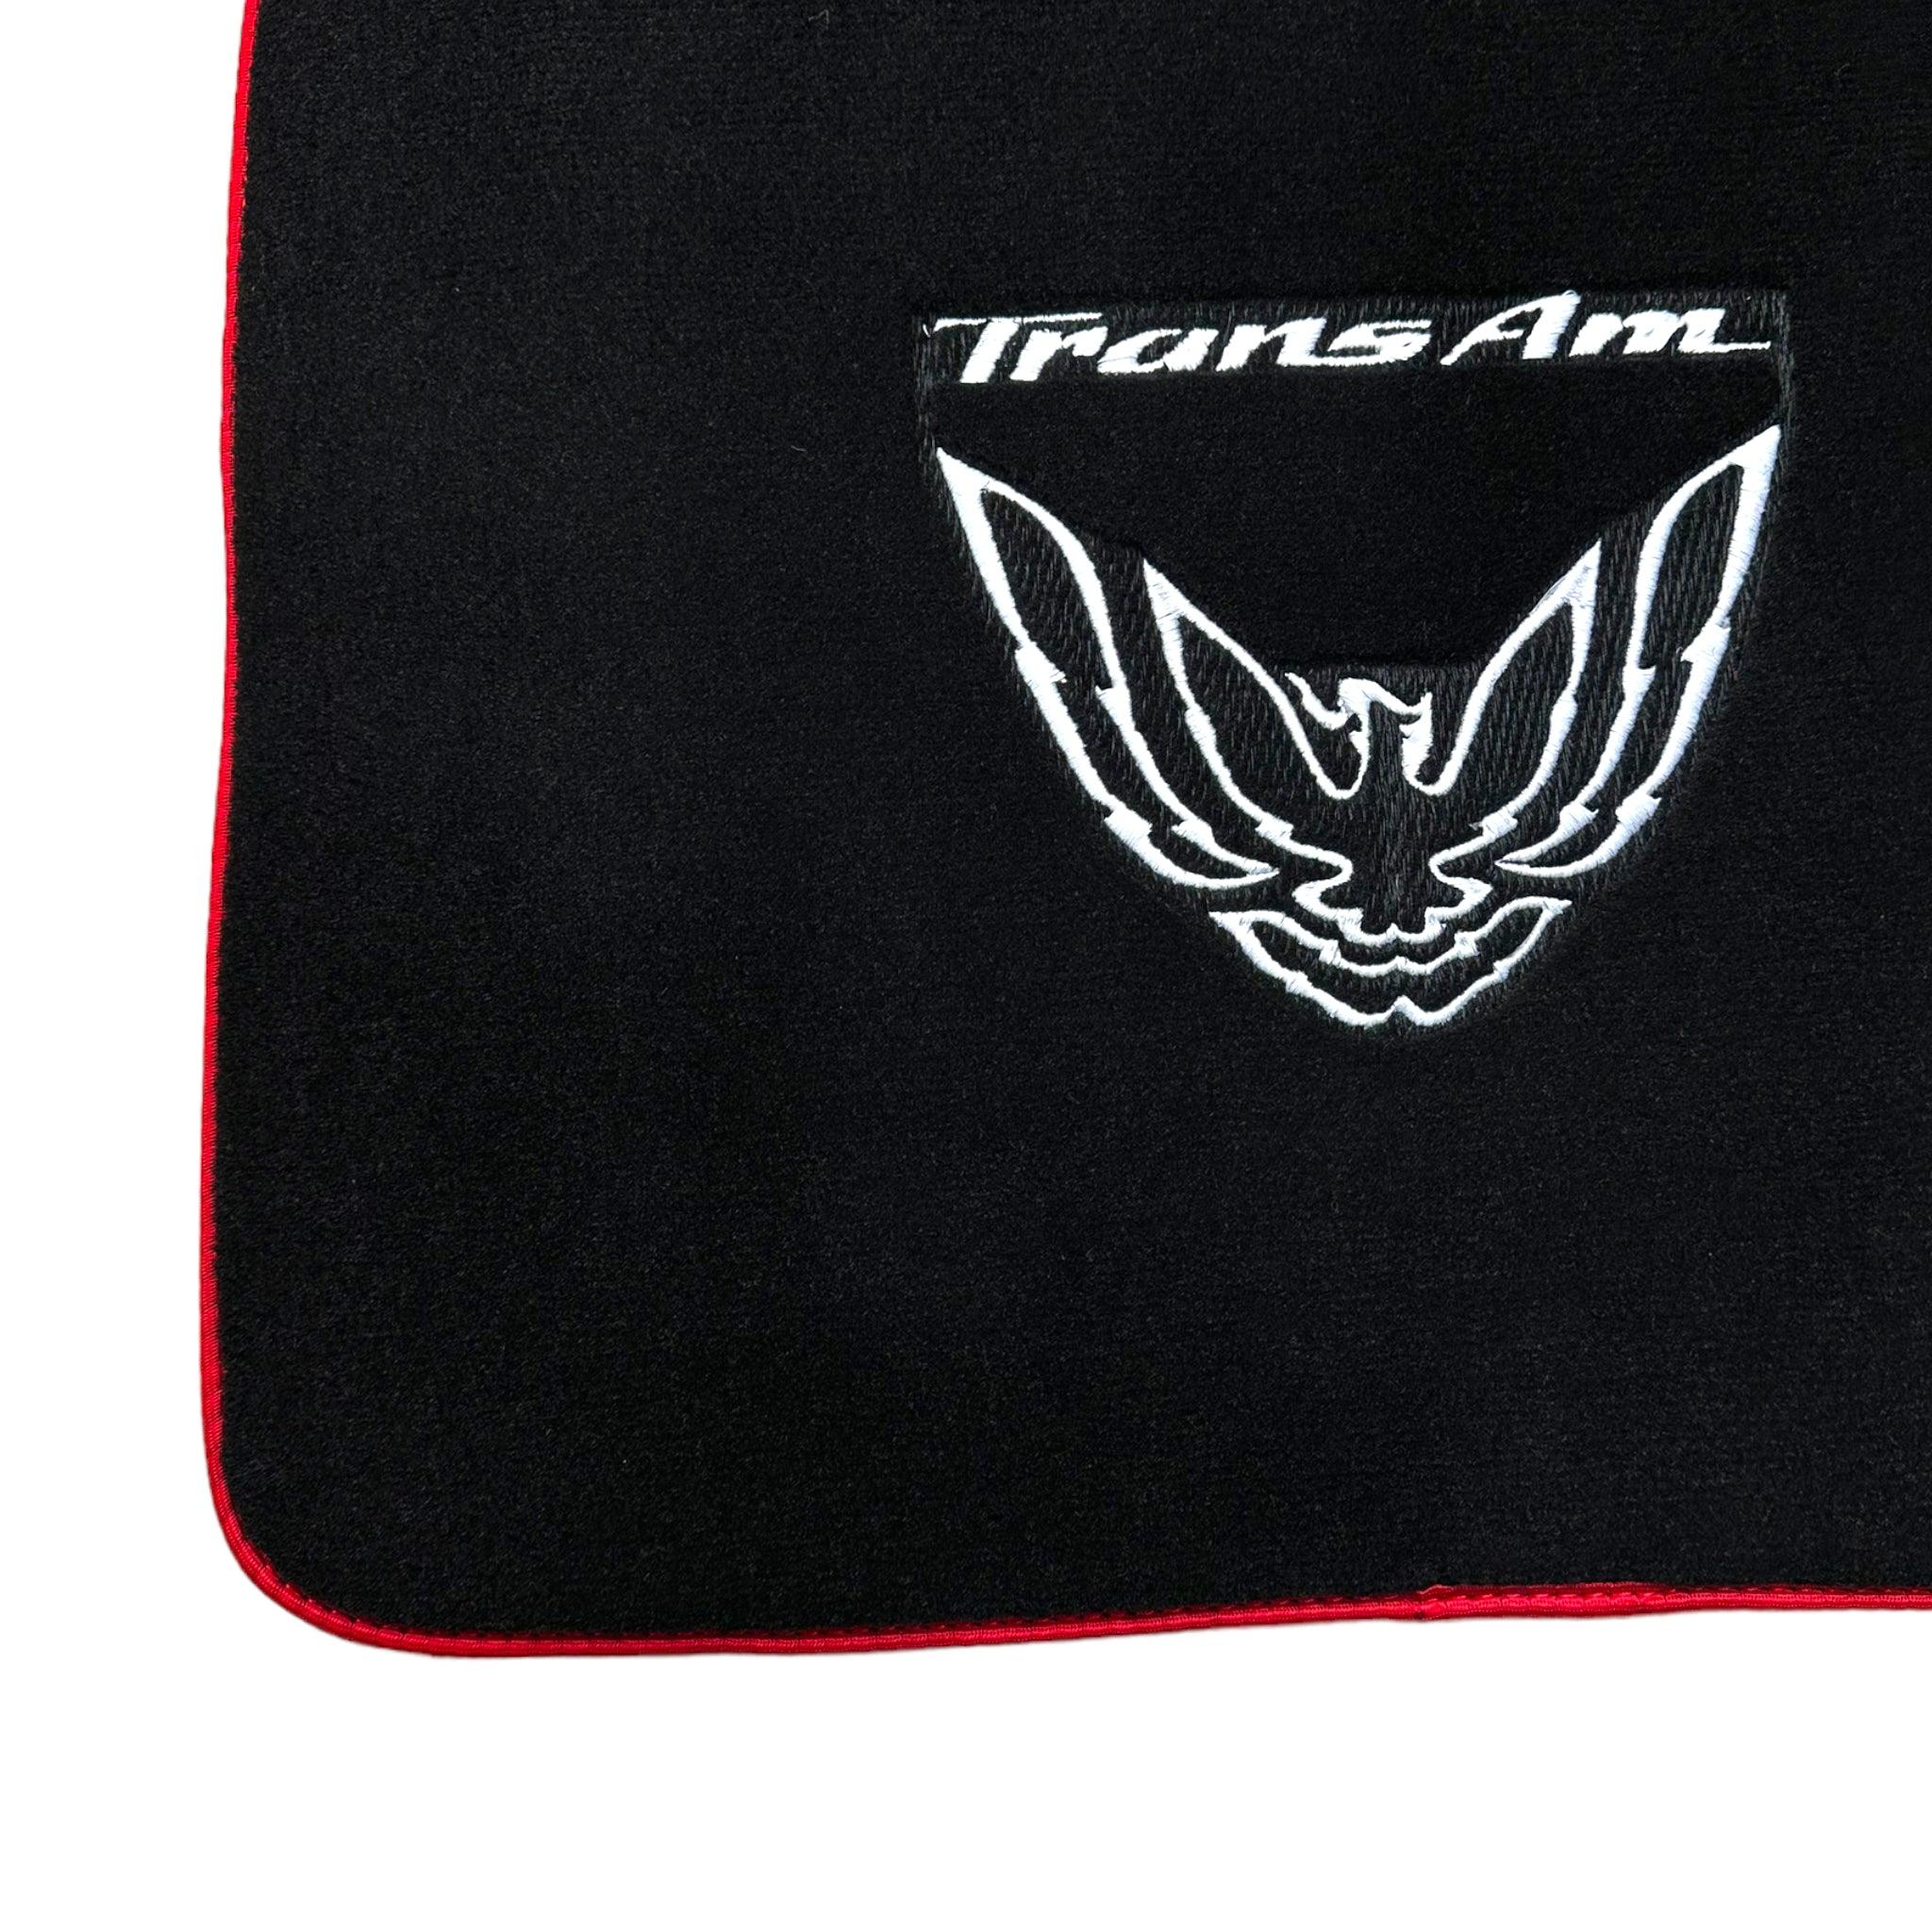 Black Floor Mats Red Trim for Pontiac FireBird (1993-2002) Trans Am